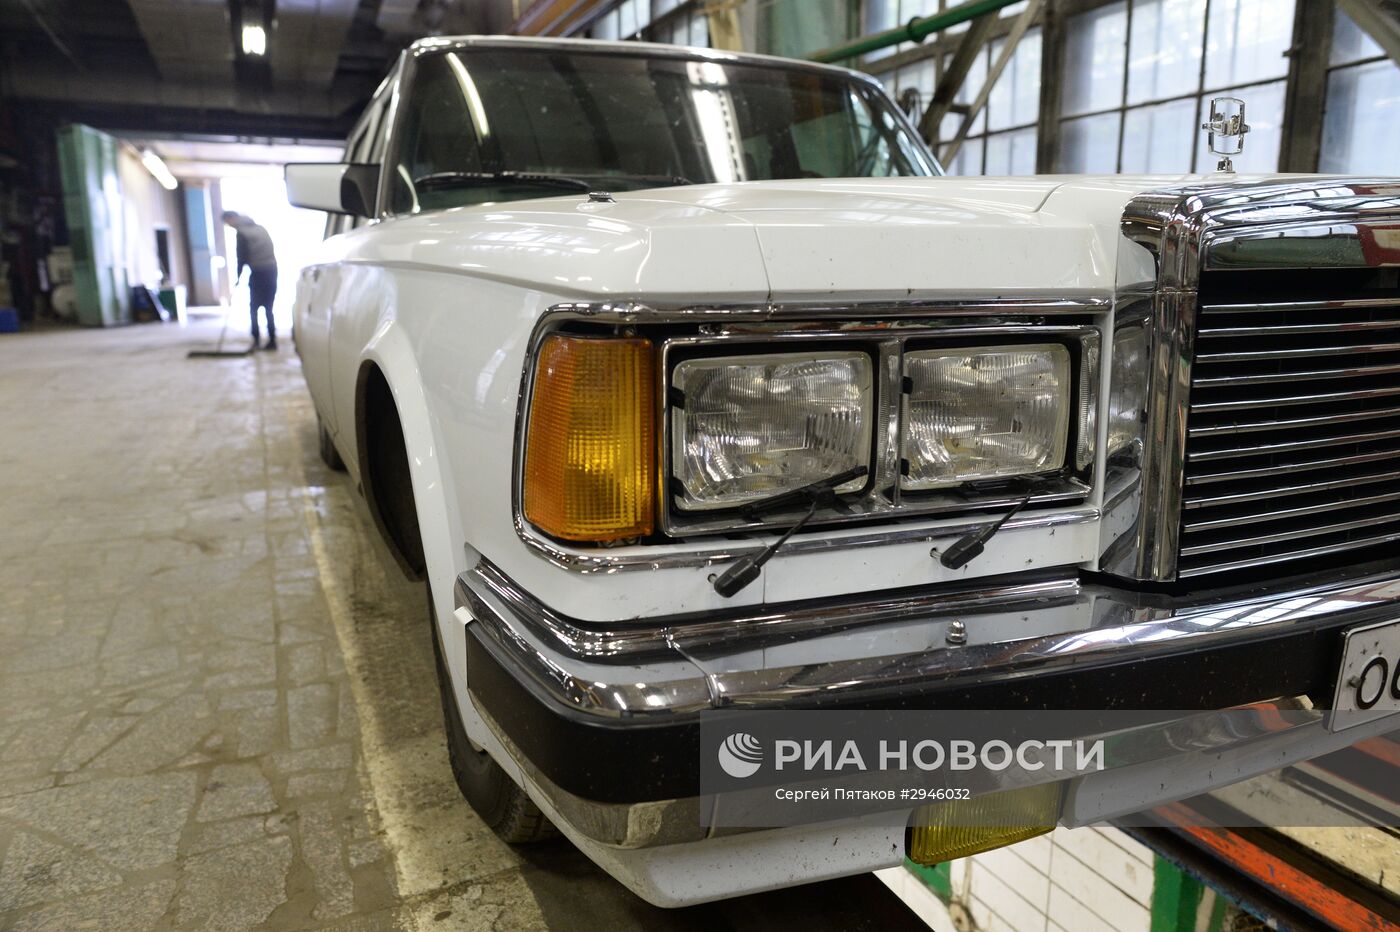 Цех реставрации автомобилей представительского класса на АМО ЗИЛ